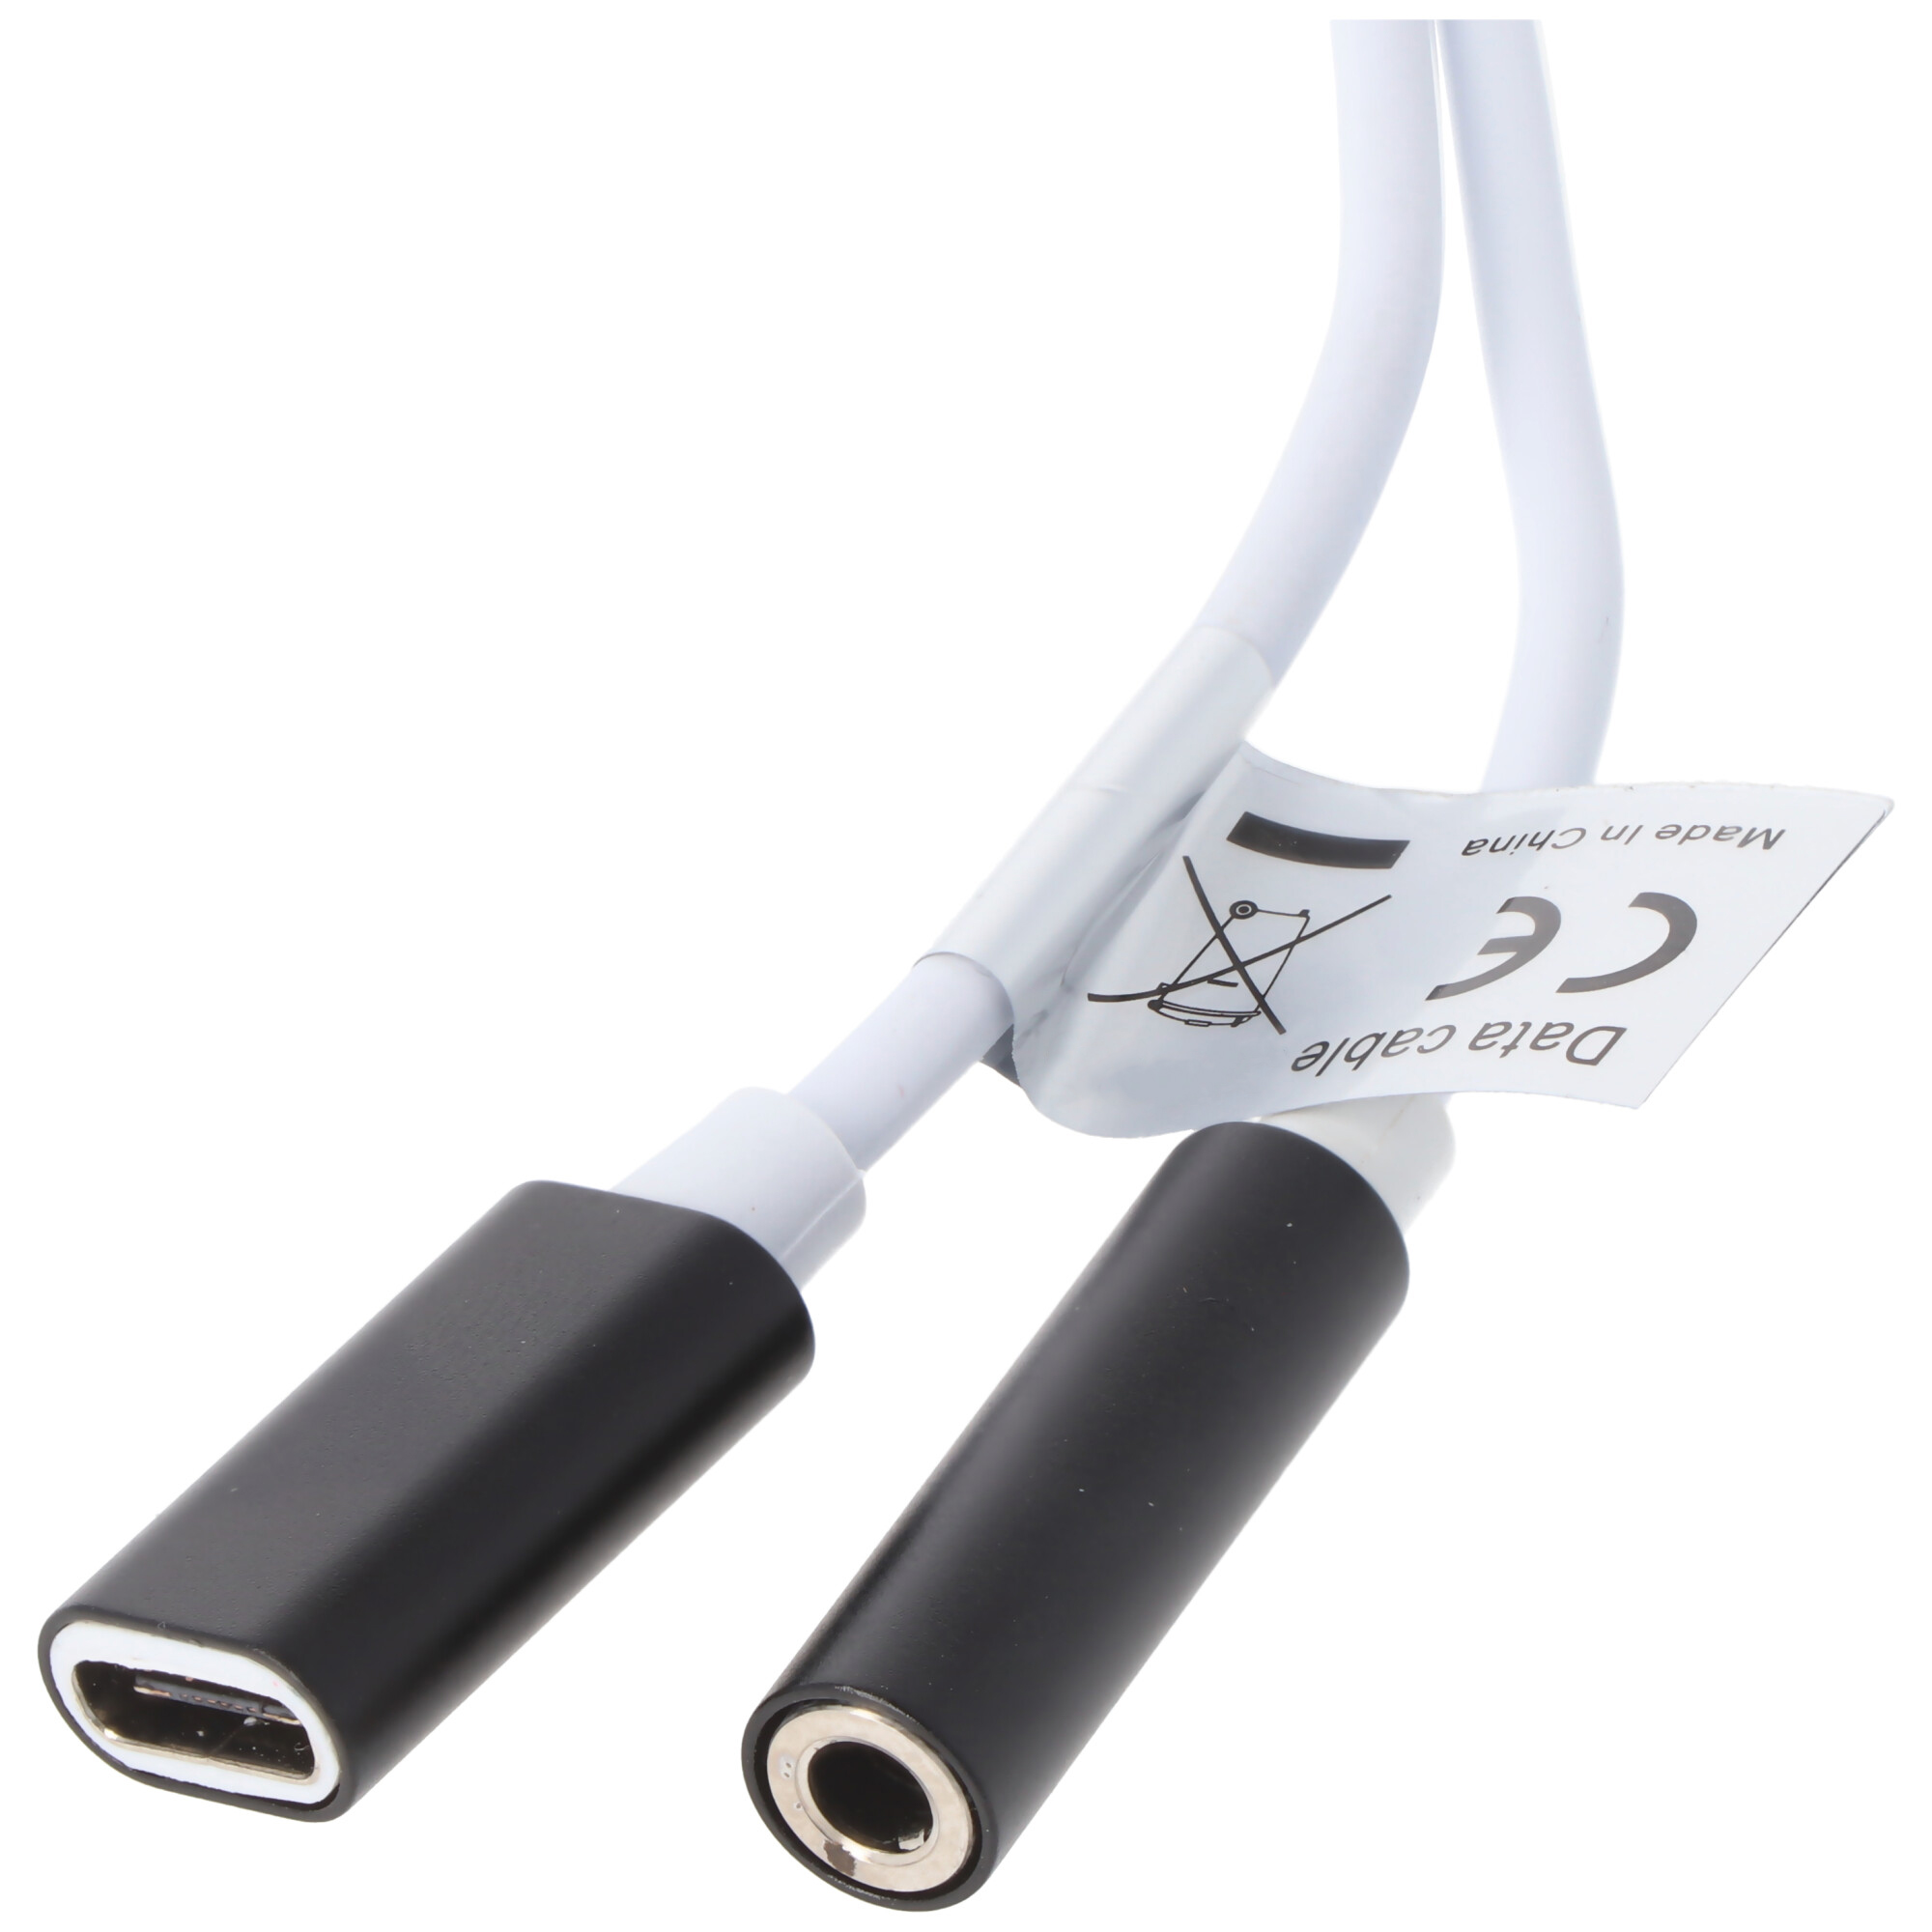 2IN1 AUDIO-ADAPTER USB TYPE C USB-C auf 3,5MM STEREO - KABEL UND LADEANSCHLUSS